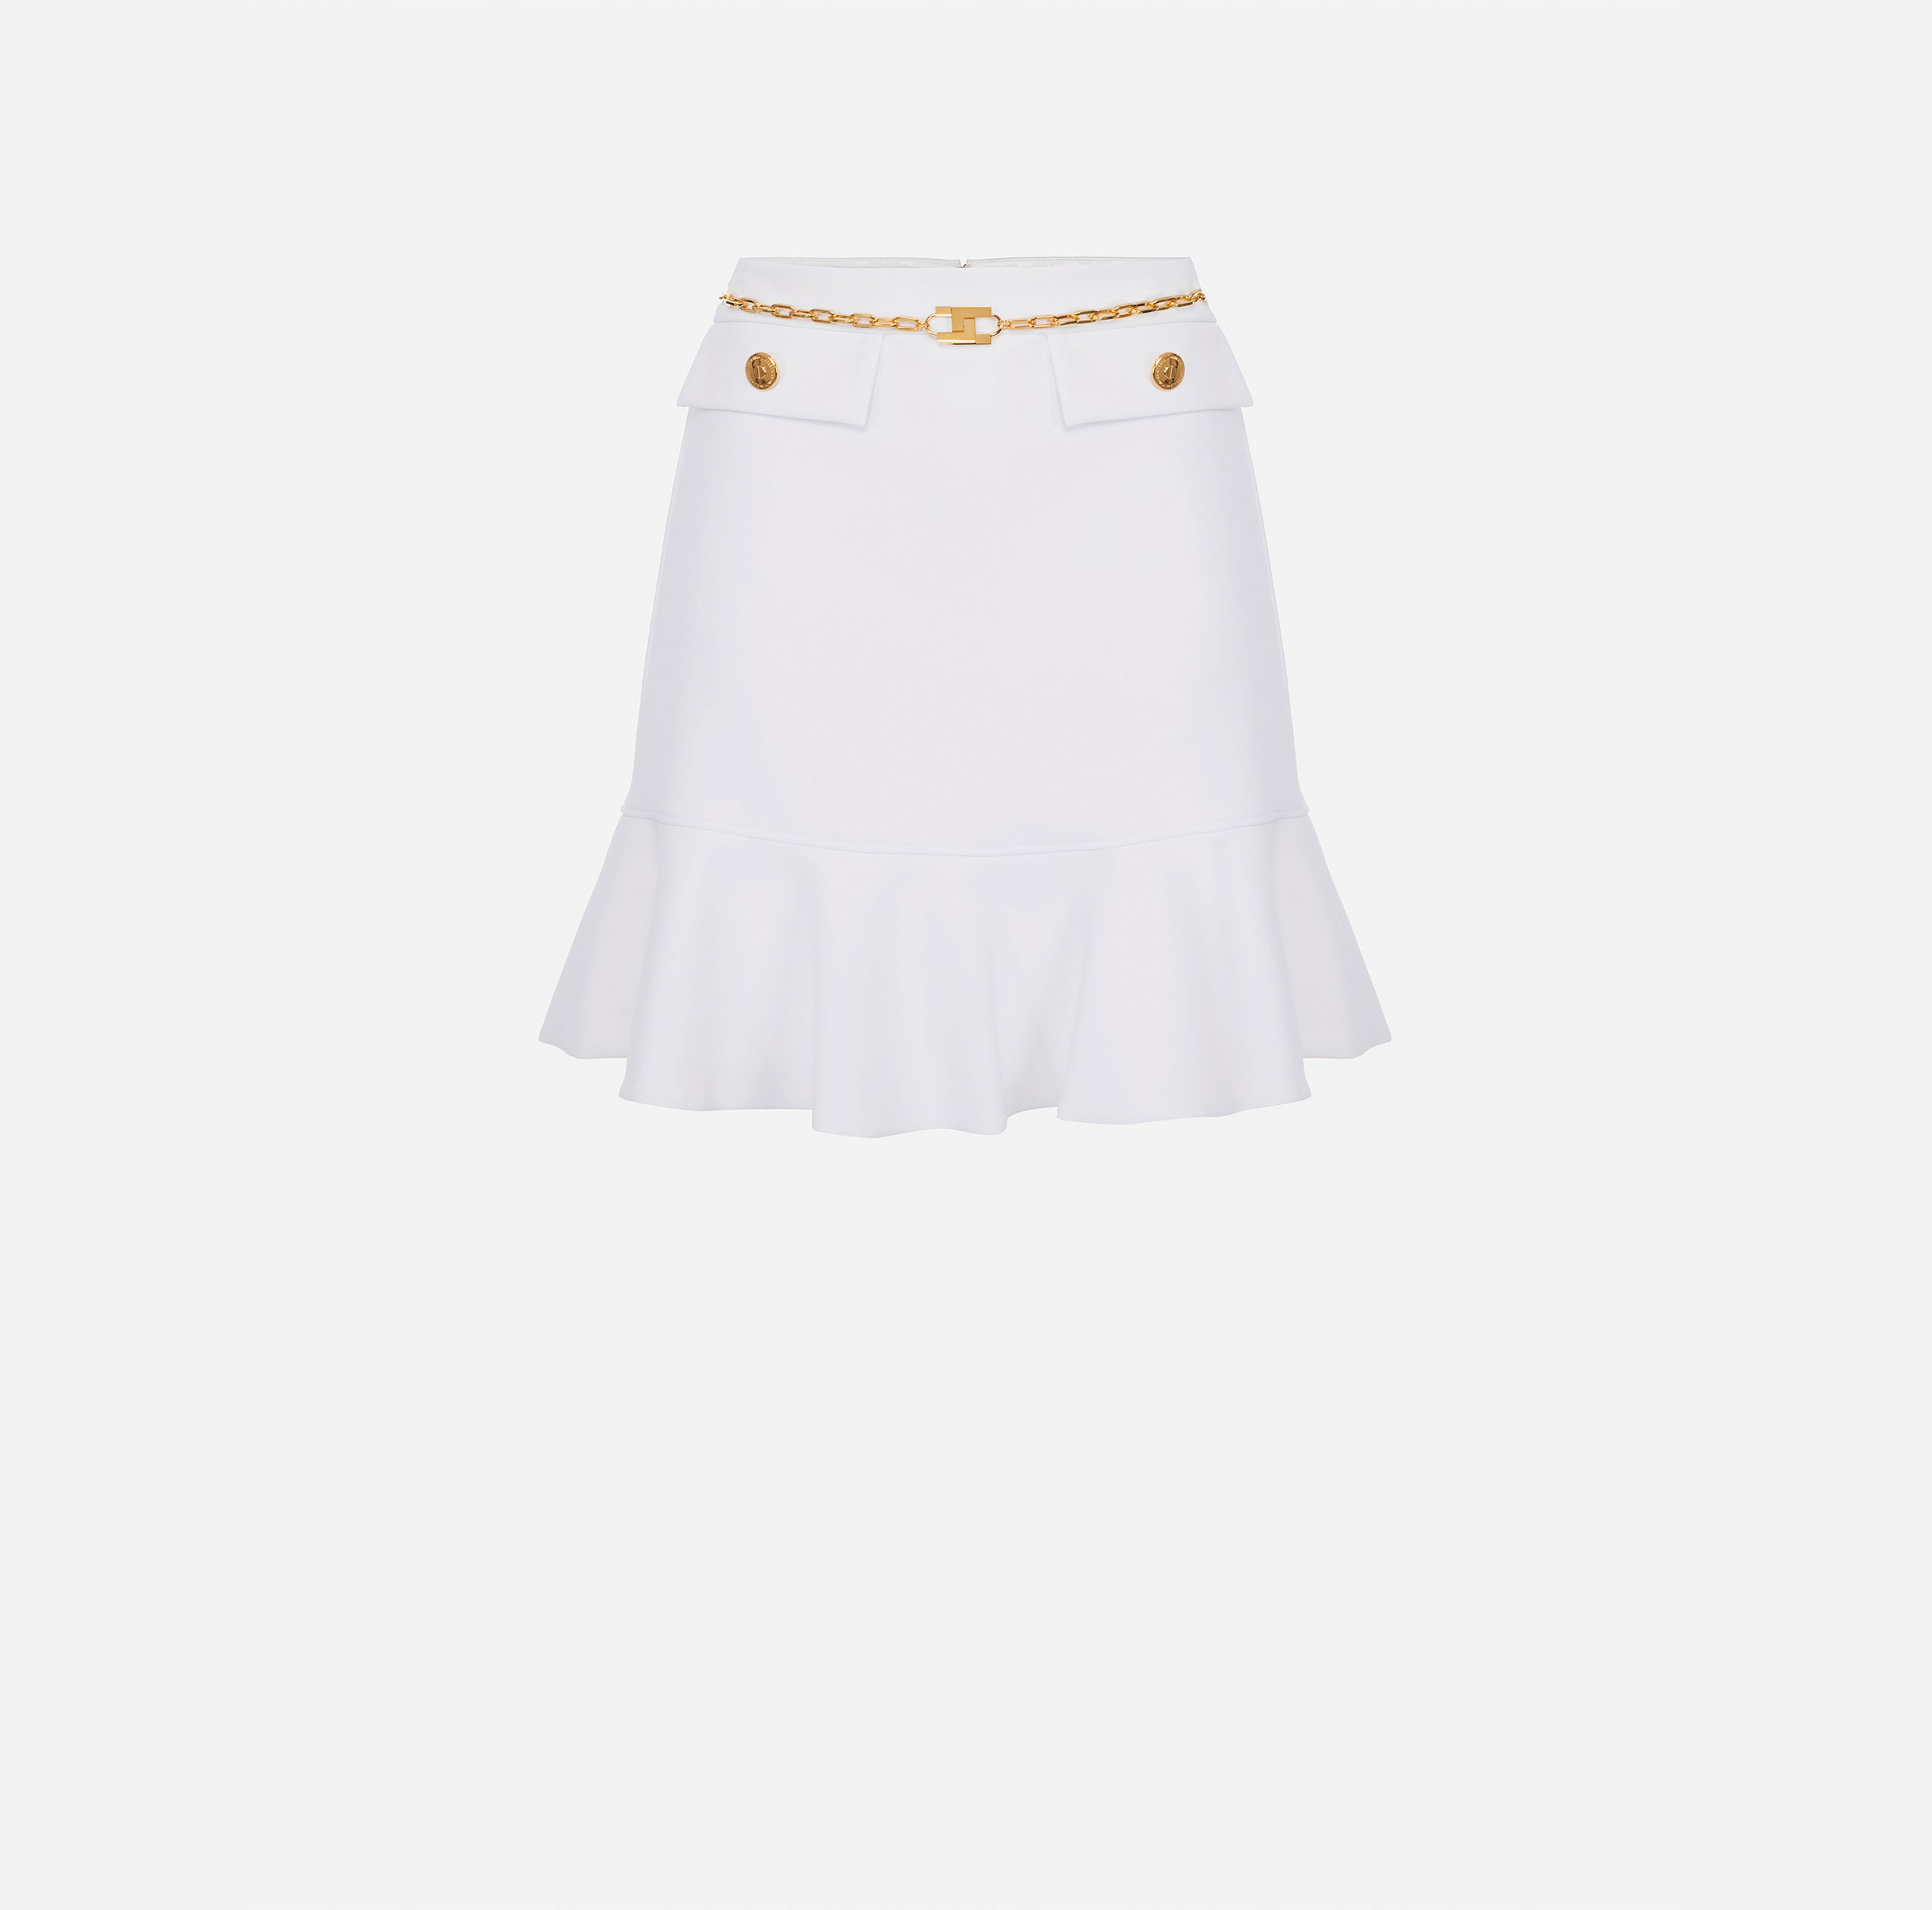 Miniskirt with chain - ABBIGLIAMENTO - Elisabetta Franchi